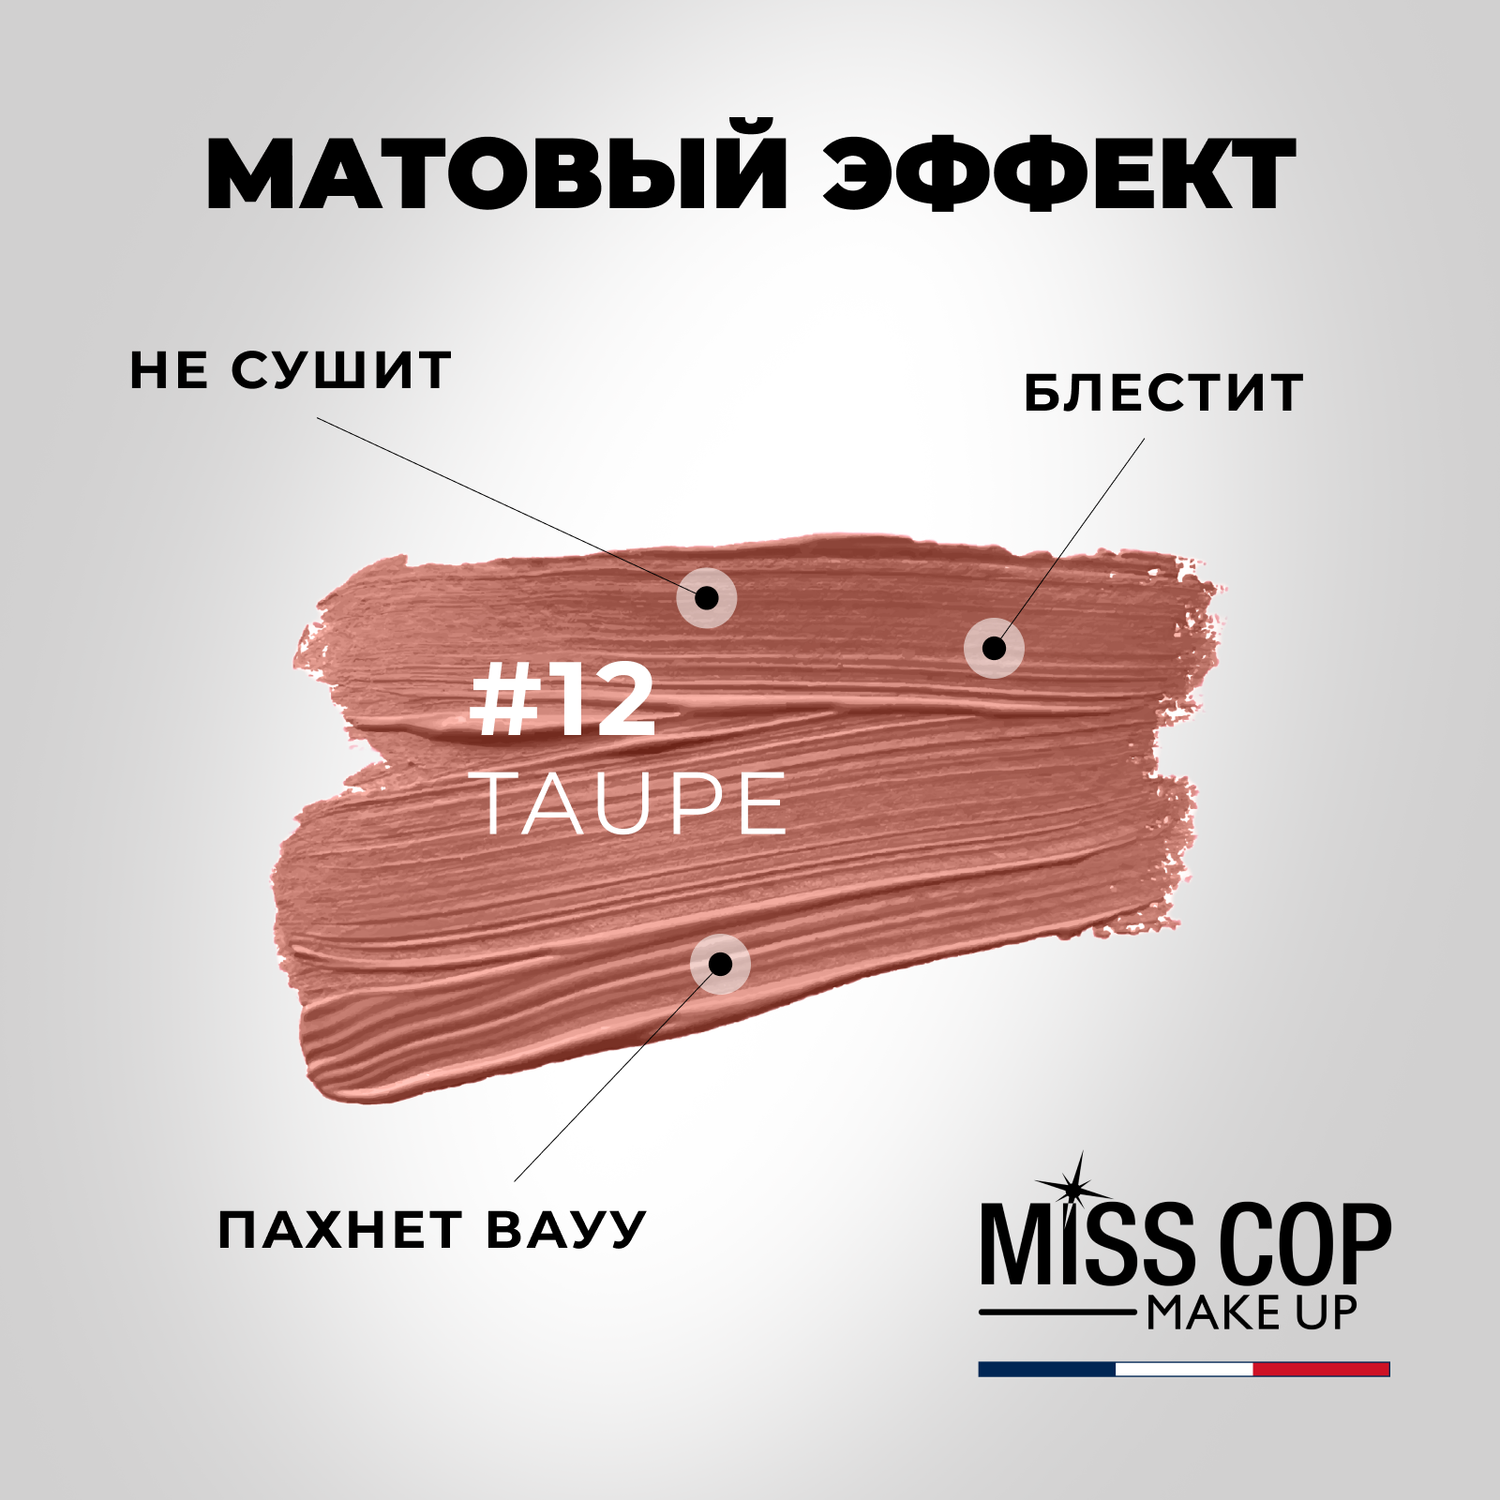 Помада губная матовая Miss Cop коричневая Франция цвет 12 Taupe серо-коричневый 3 г - фото 3